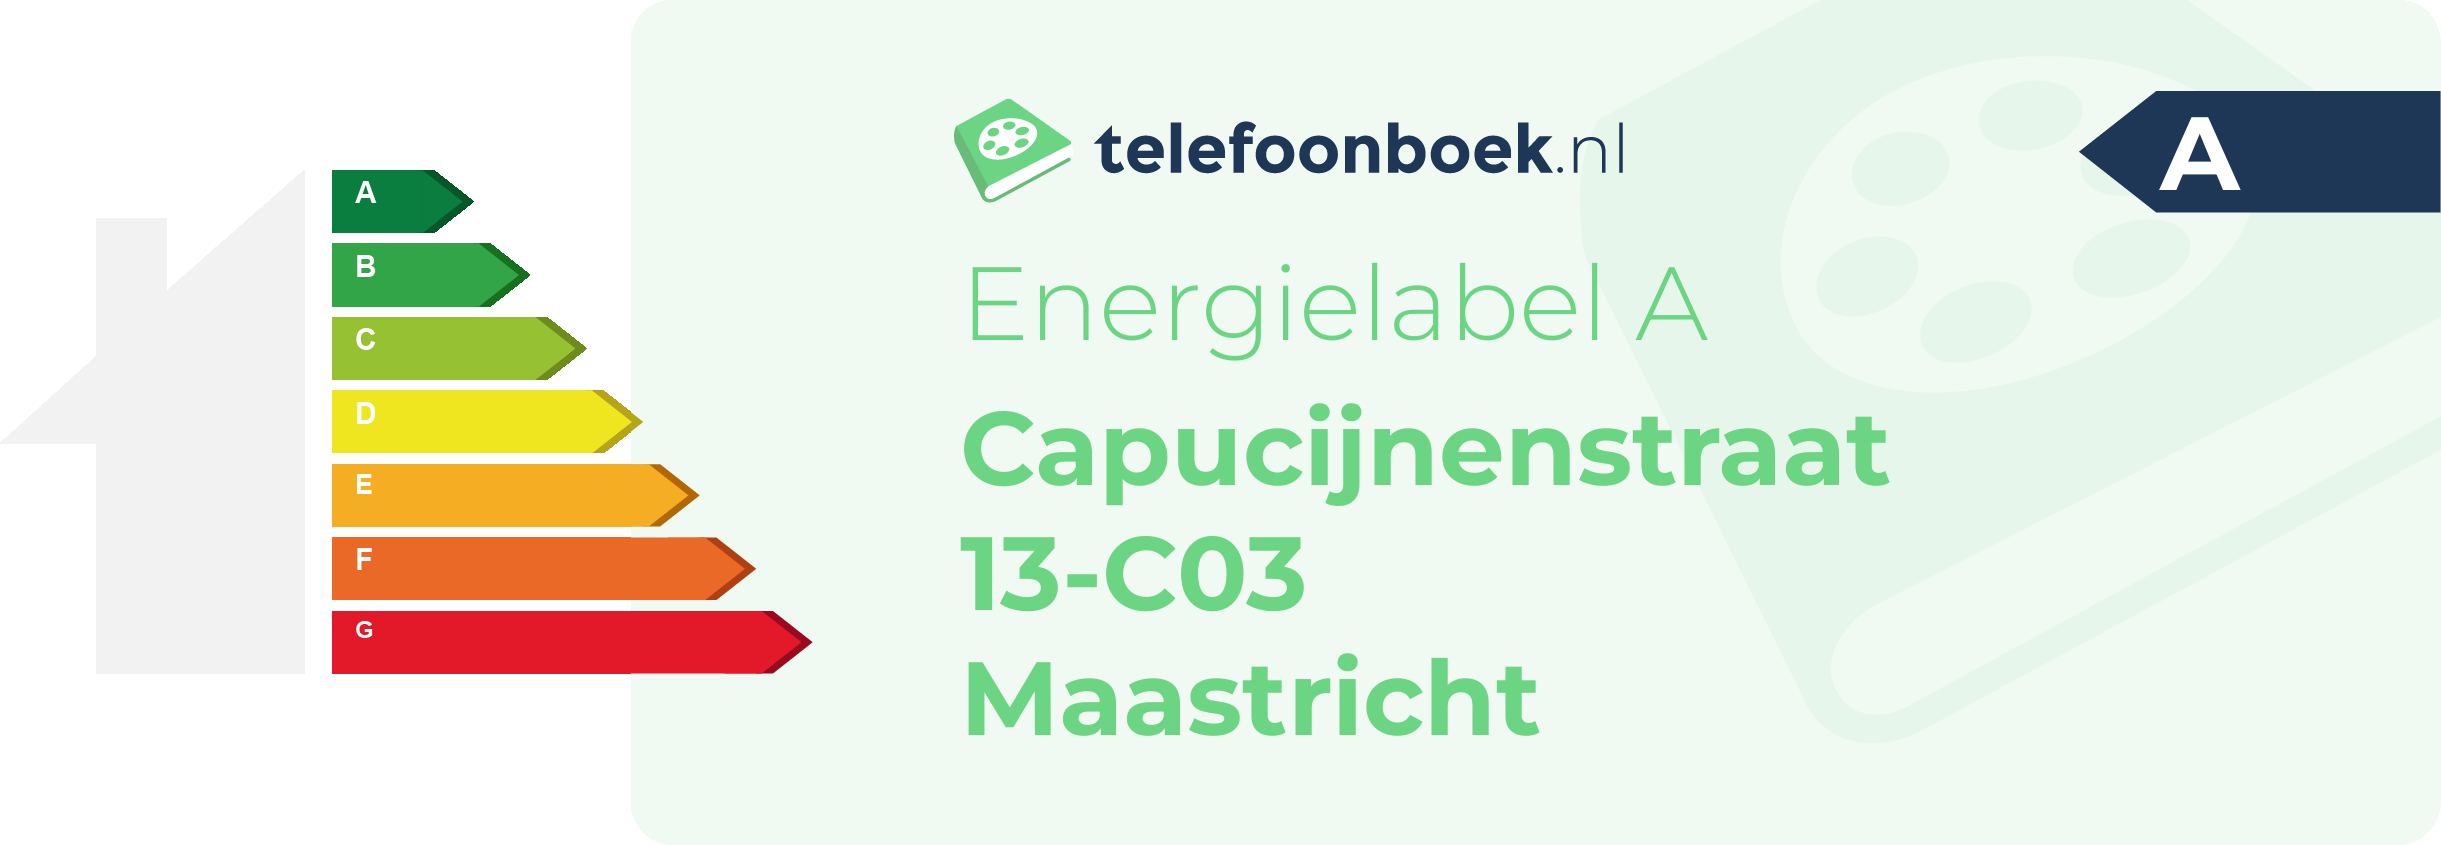 Energielabel Capucijnenstraat 13-C03 Maastricht